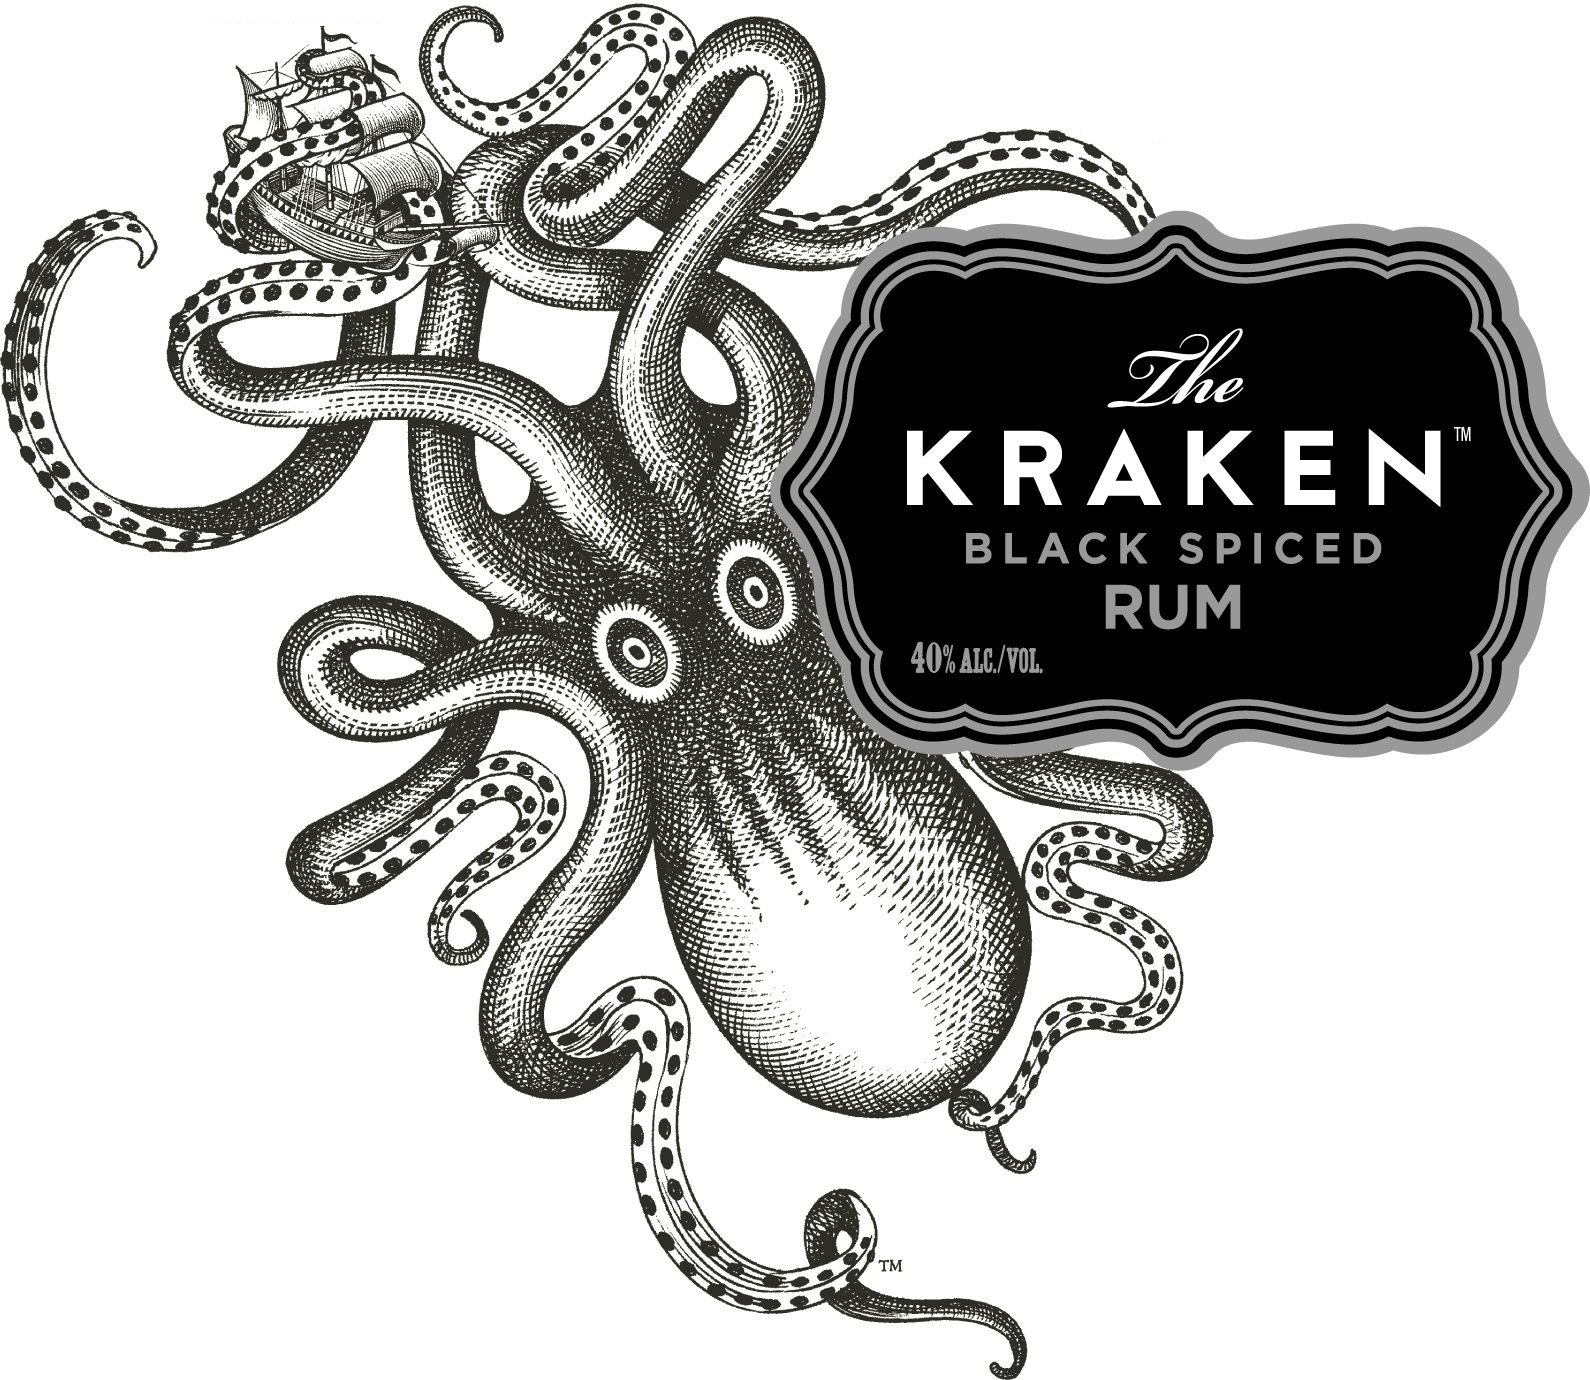 Кракен ру. Kraken rum этикетка. Ром Kraken Black Spiced. Кракен логотип. Ром с осьминогом на бутылке.